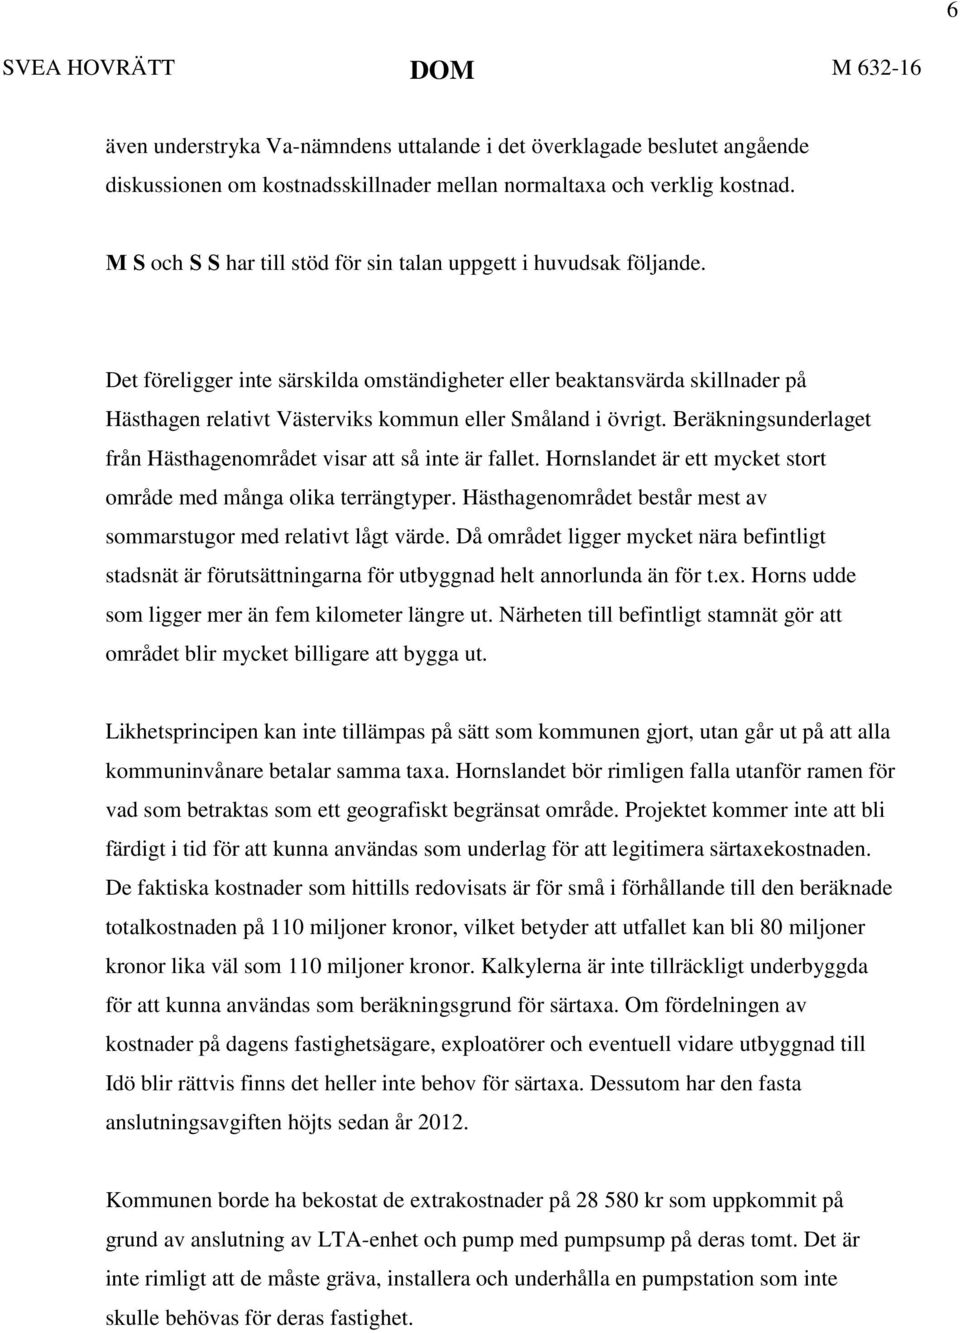 Det föreligger inte särskilda omständigheter eller beaktansvärda skillnader på Hästhagen relativt Västerviks kommun eller Småland i övrigt.